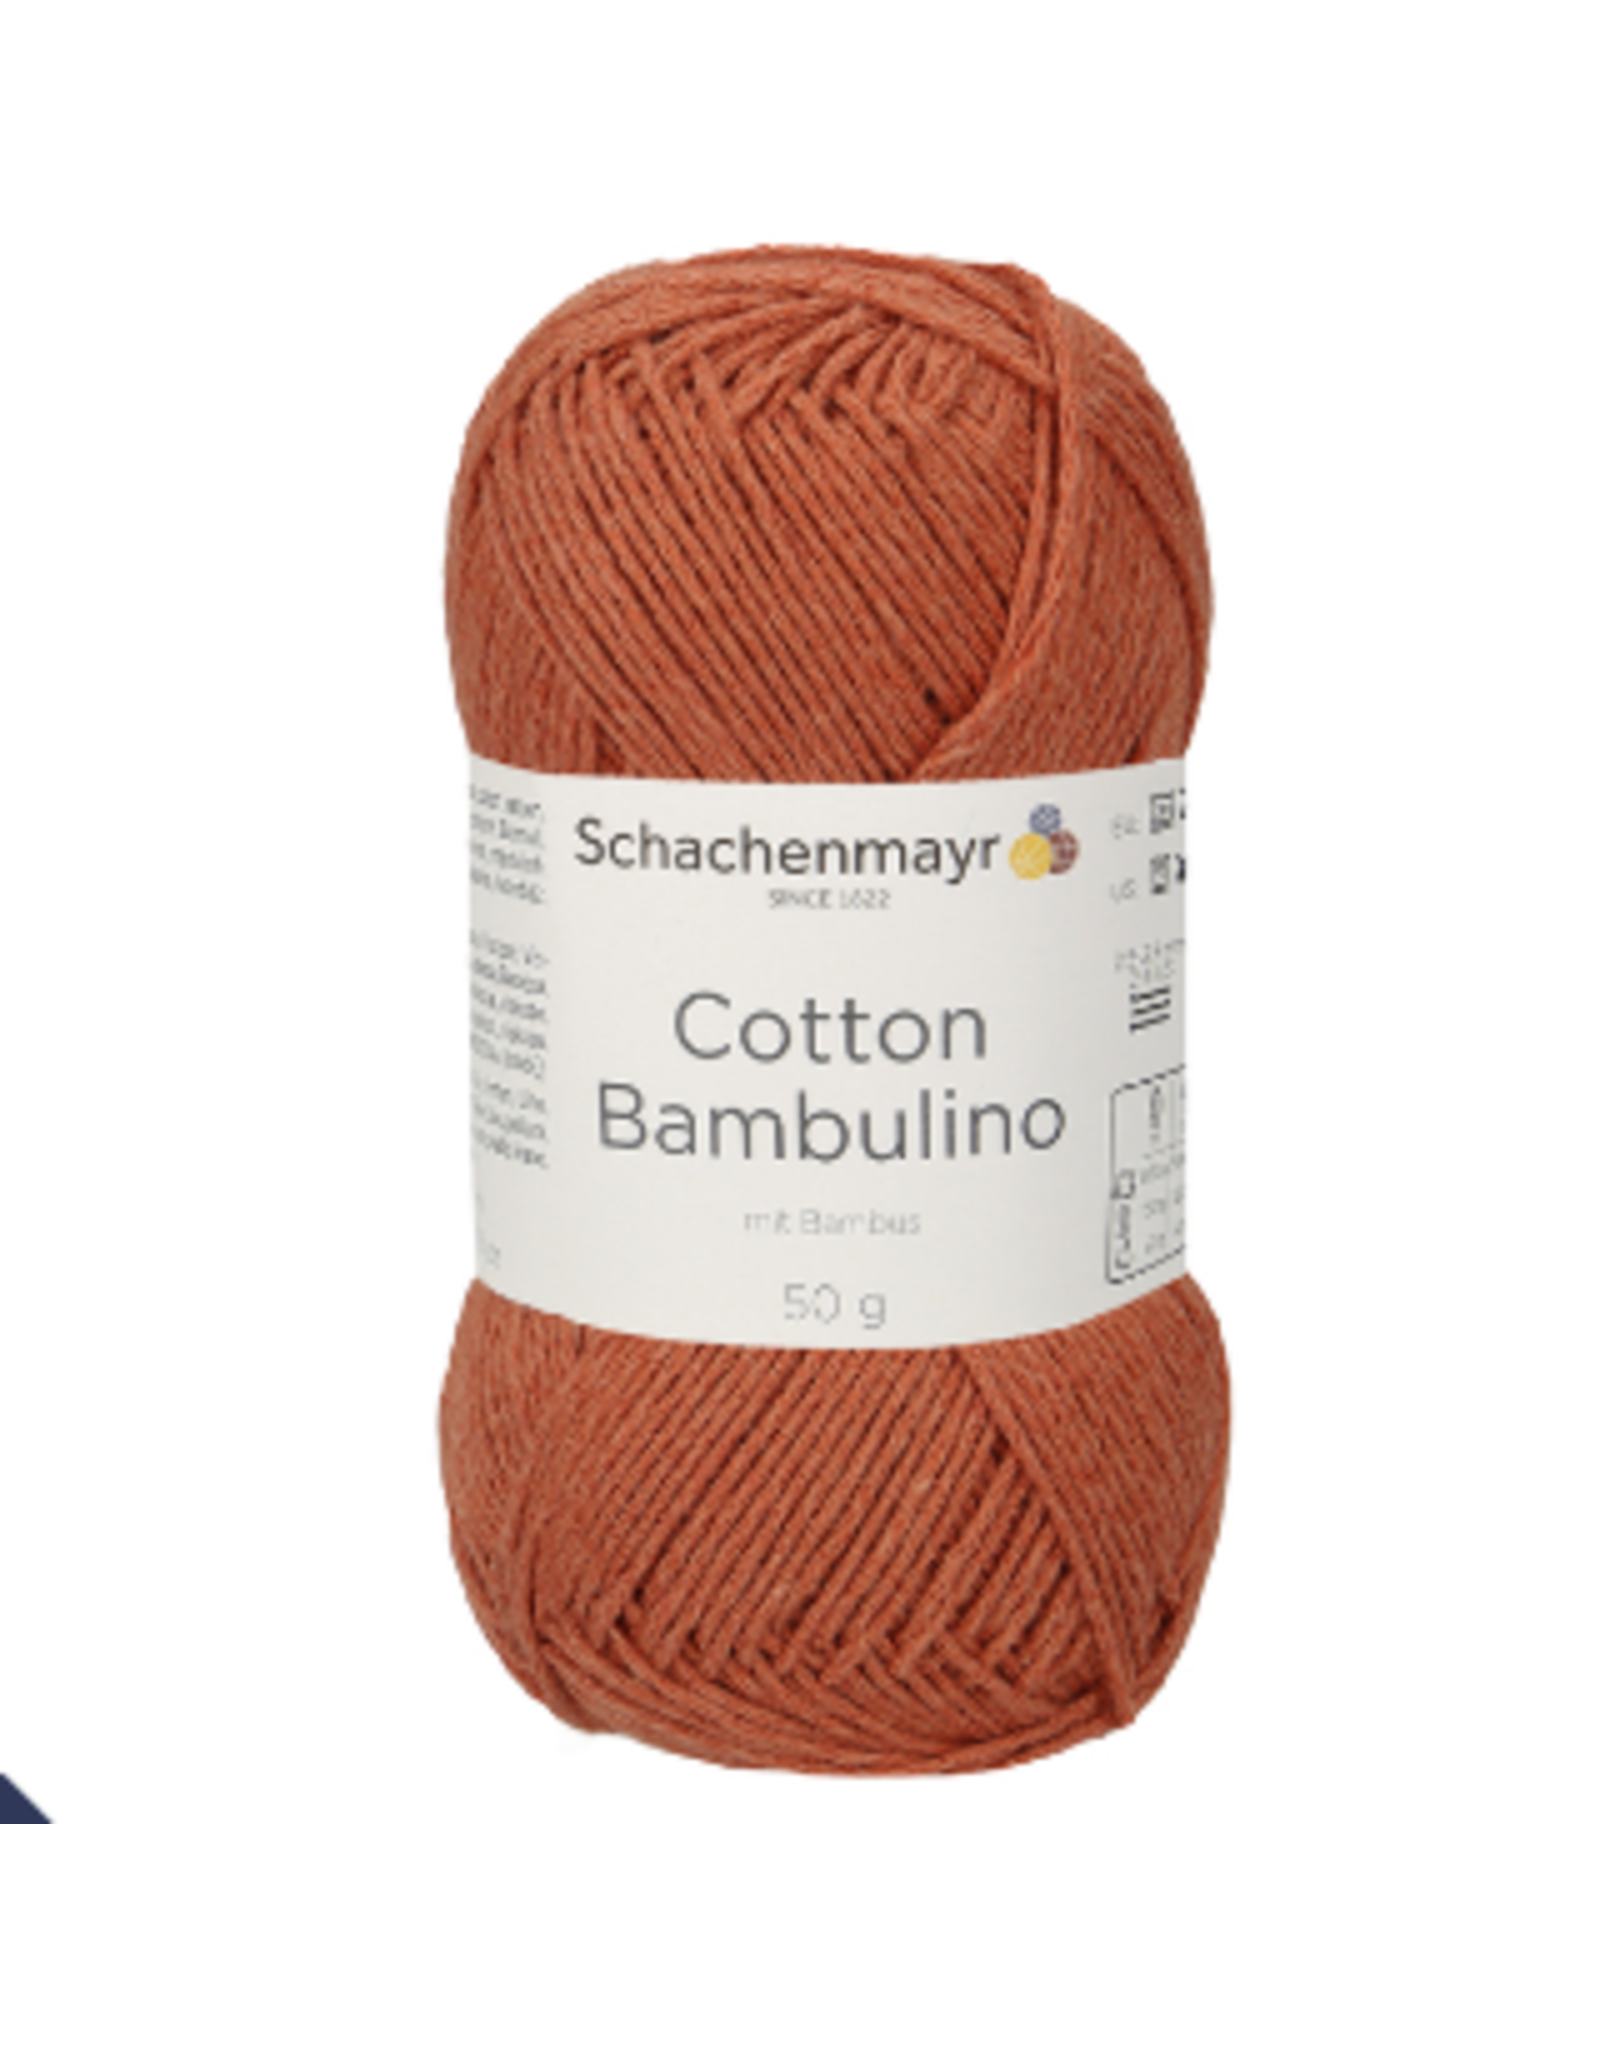 Schachenmayr Schachenmayr Cotton Bambulino 12